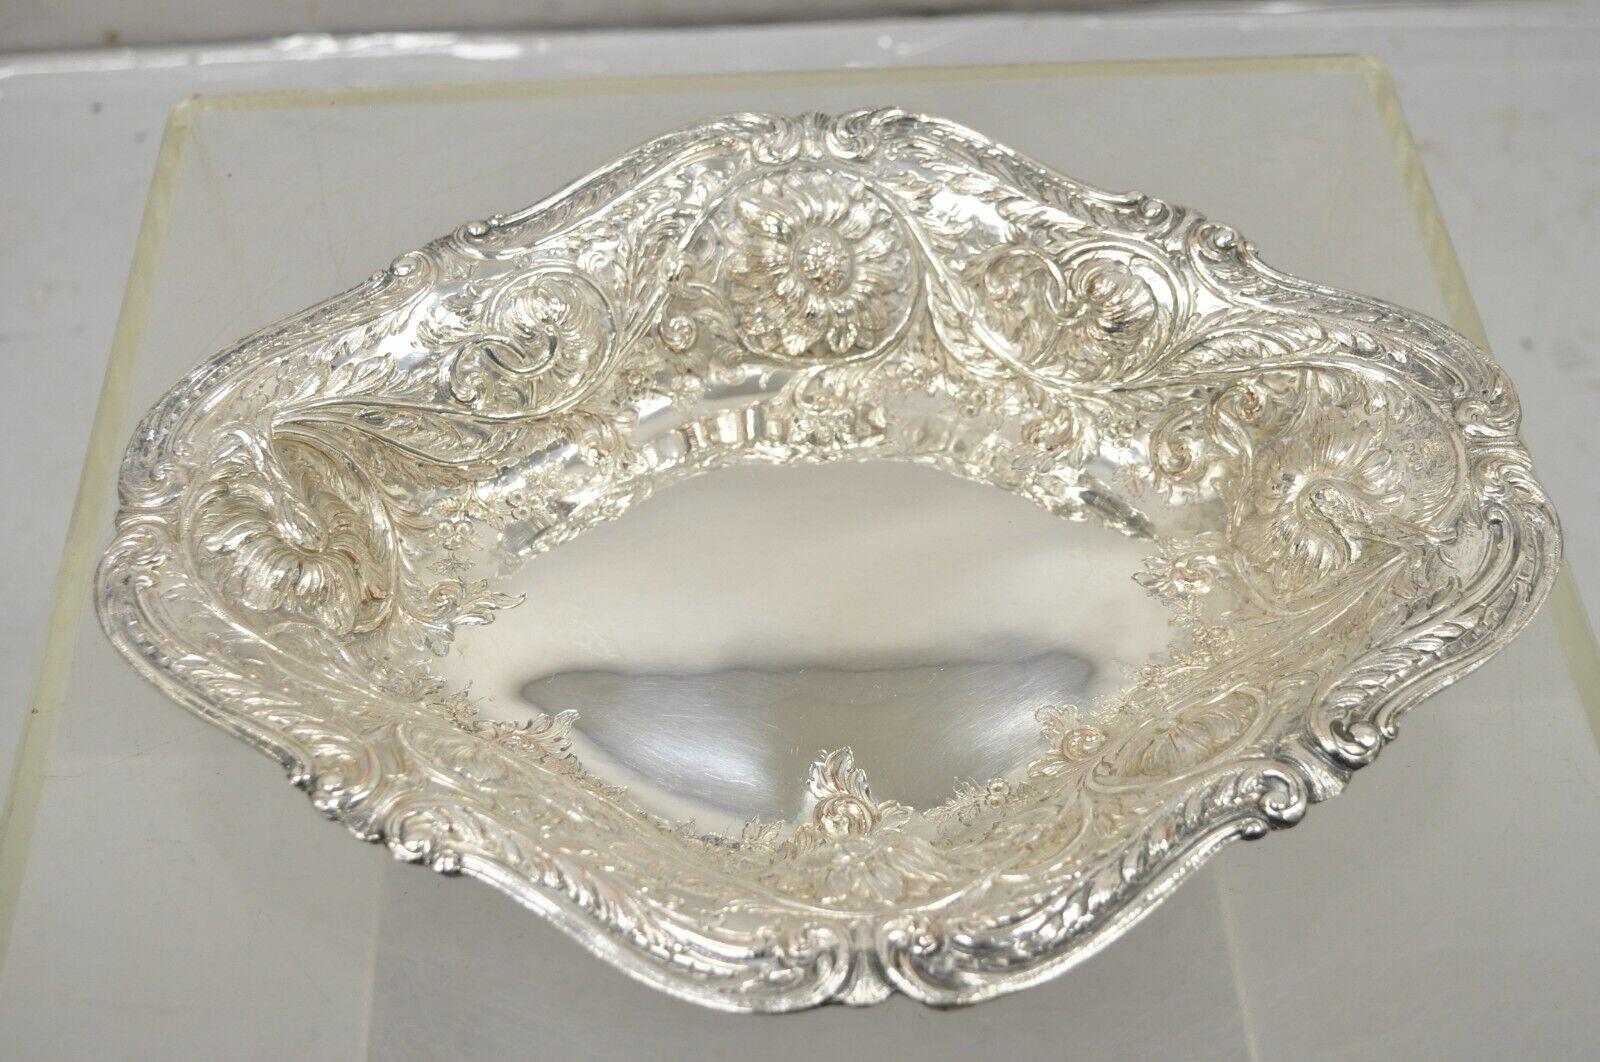 Pair Antique A&M English Victorian Art Nouveau Silver Plate Floral Repousse Fruit Bowls Dish - a Pair. L'objet est orné d'un tournesol en relief et de rinceaux de vigne fleurie, d'un superbe motif repoussé, d'un poinçon d'origine, d'une paire